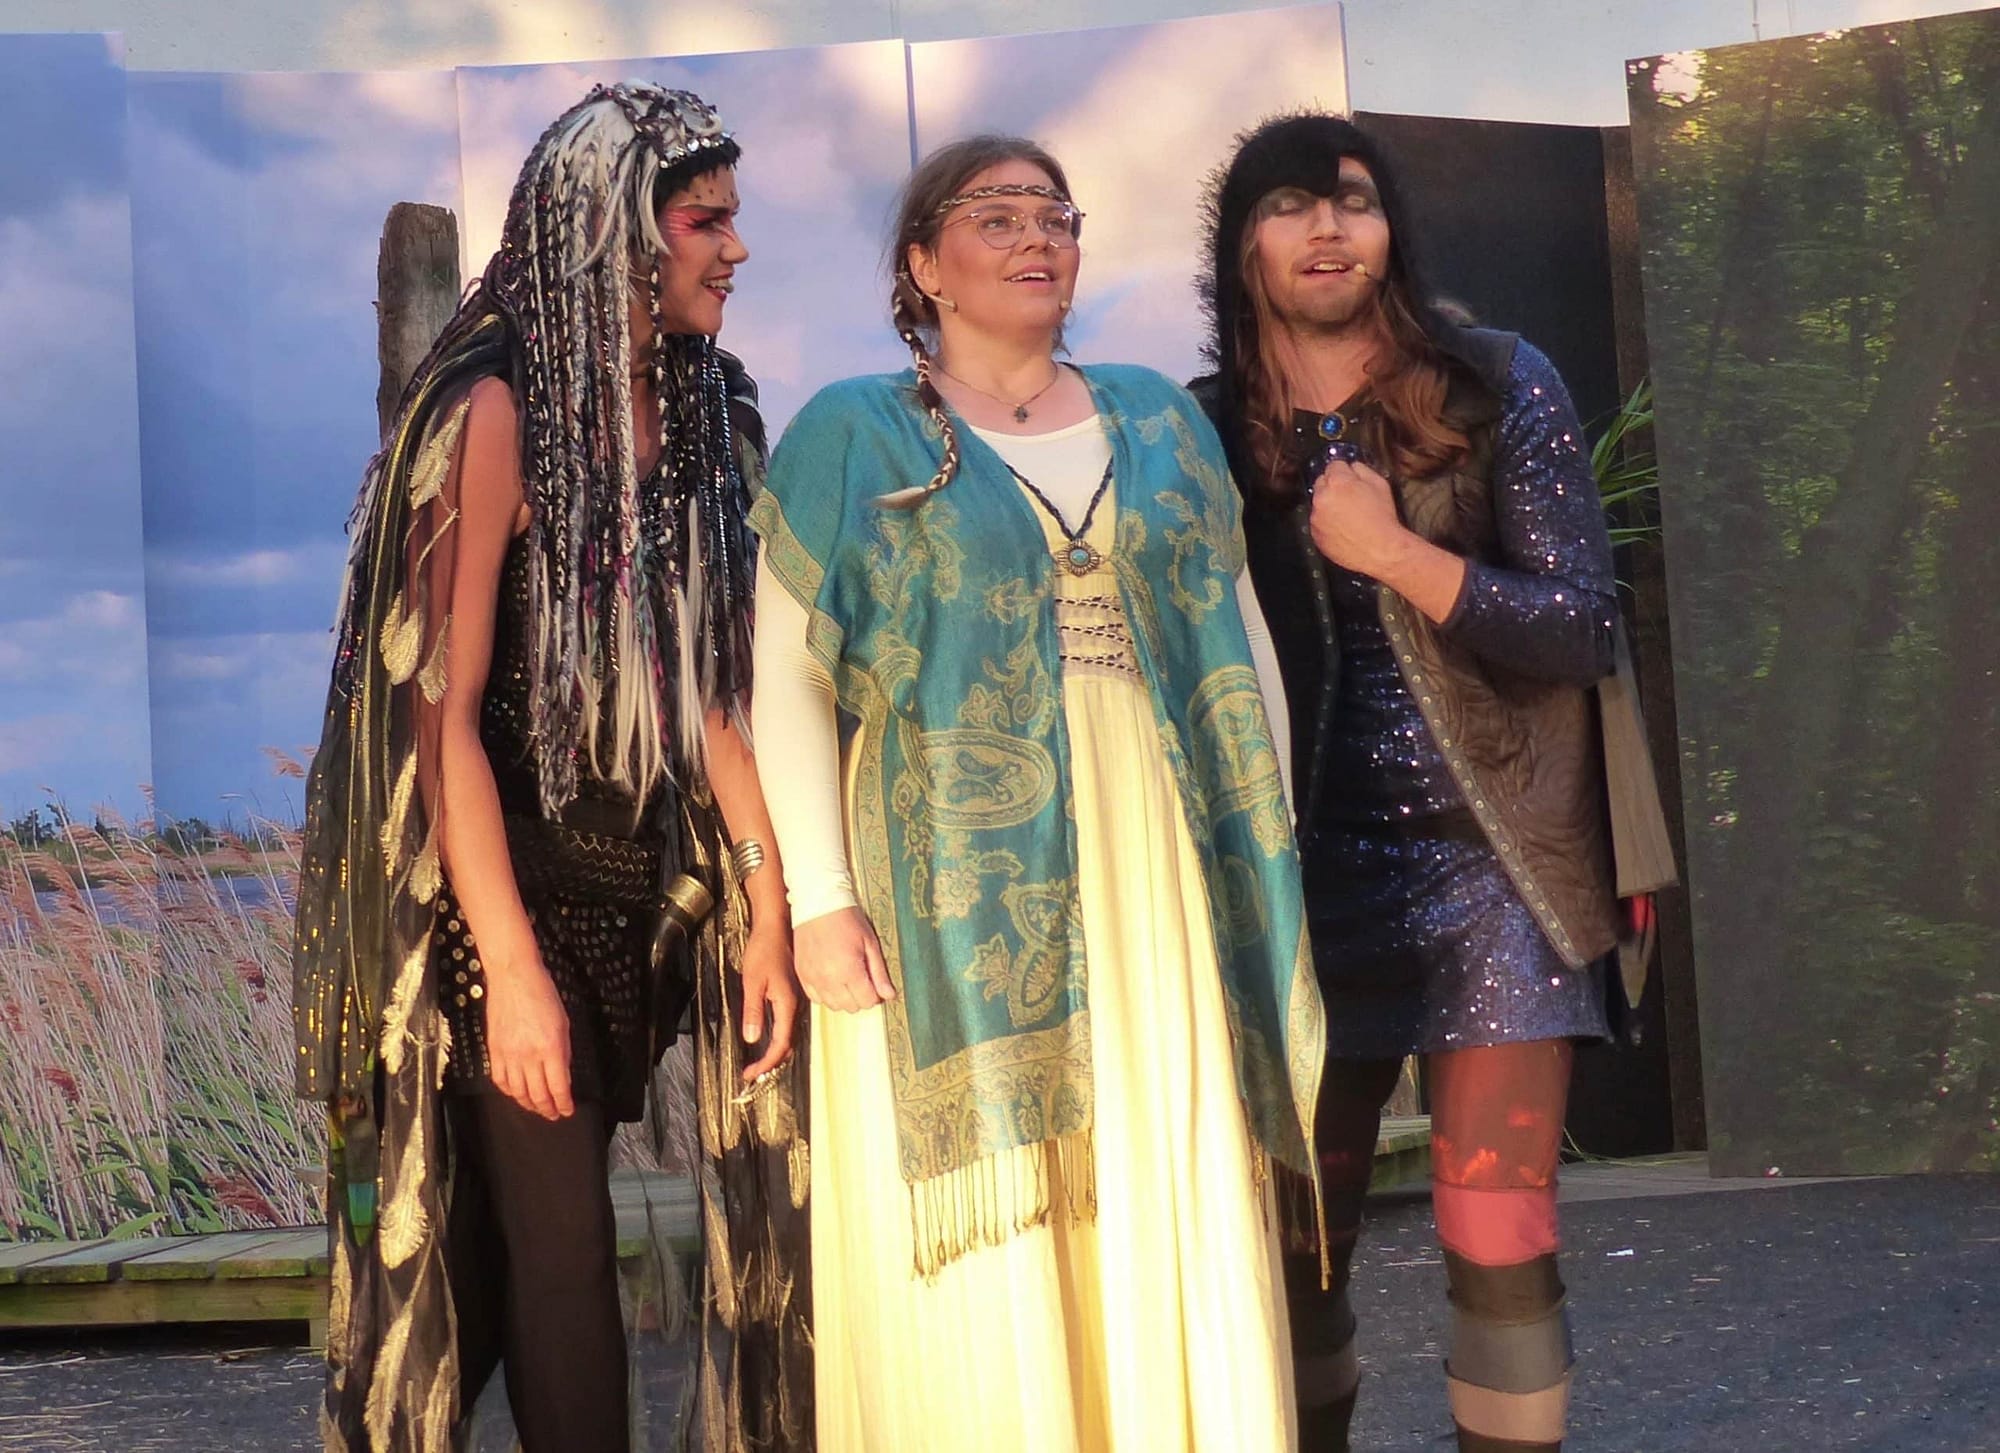 Letzte Vorstellung für „Die Wikinger – Die Hexe von Haithabu“ am Freitag, 26. August im Barther Theatergarten. 1